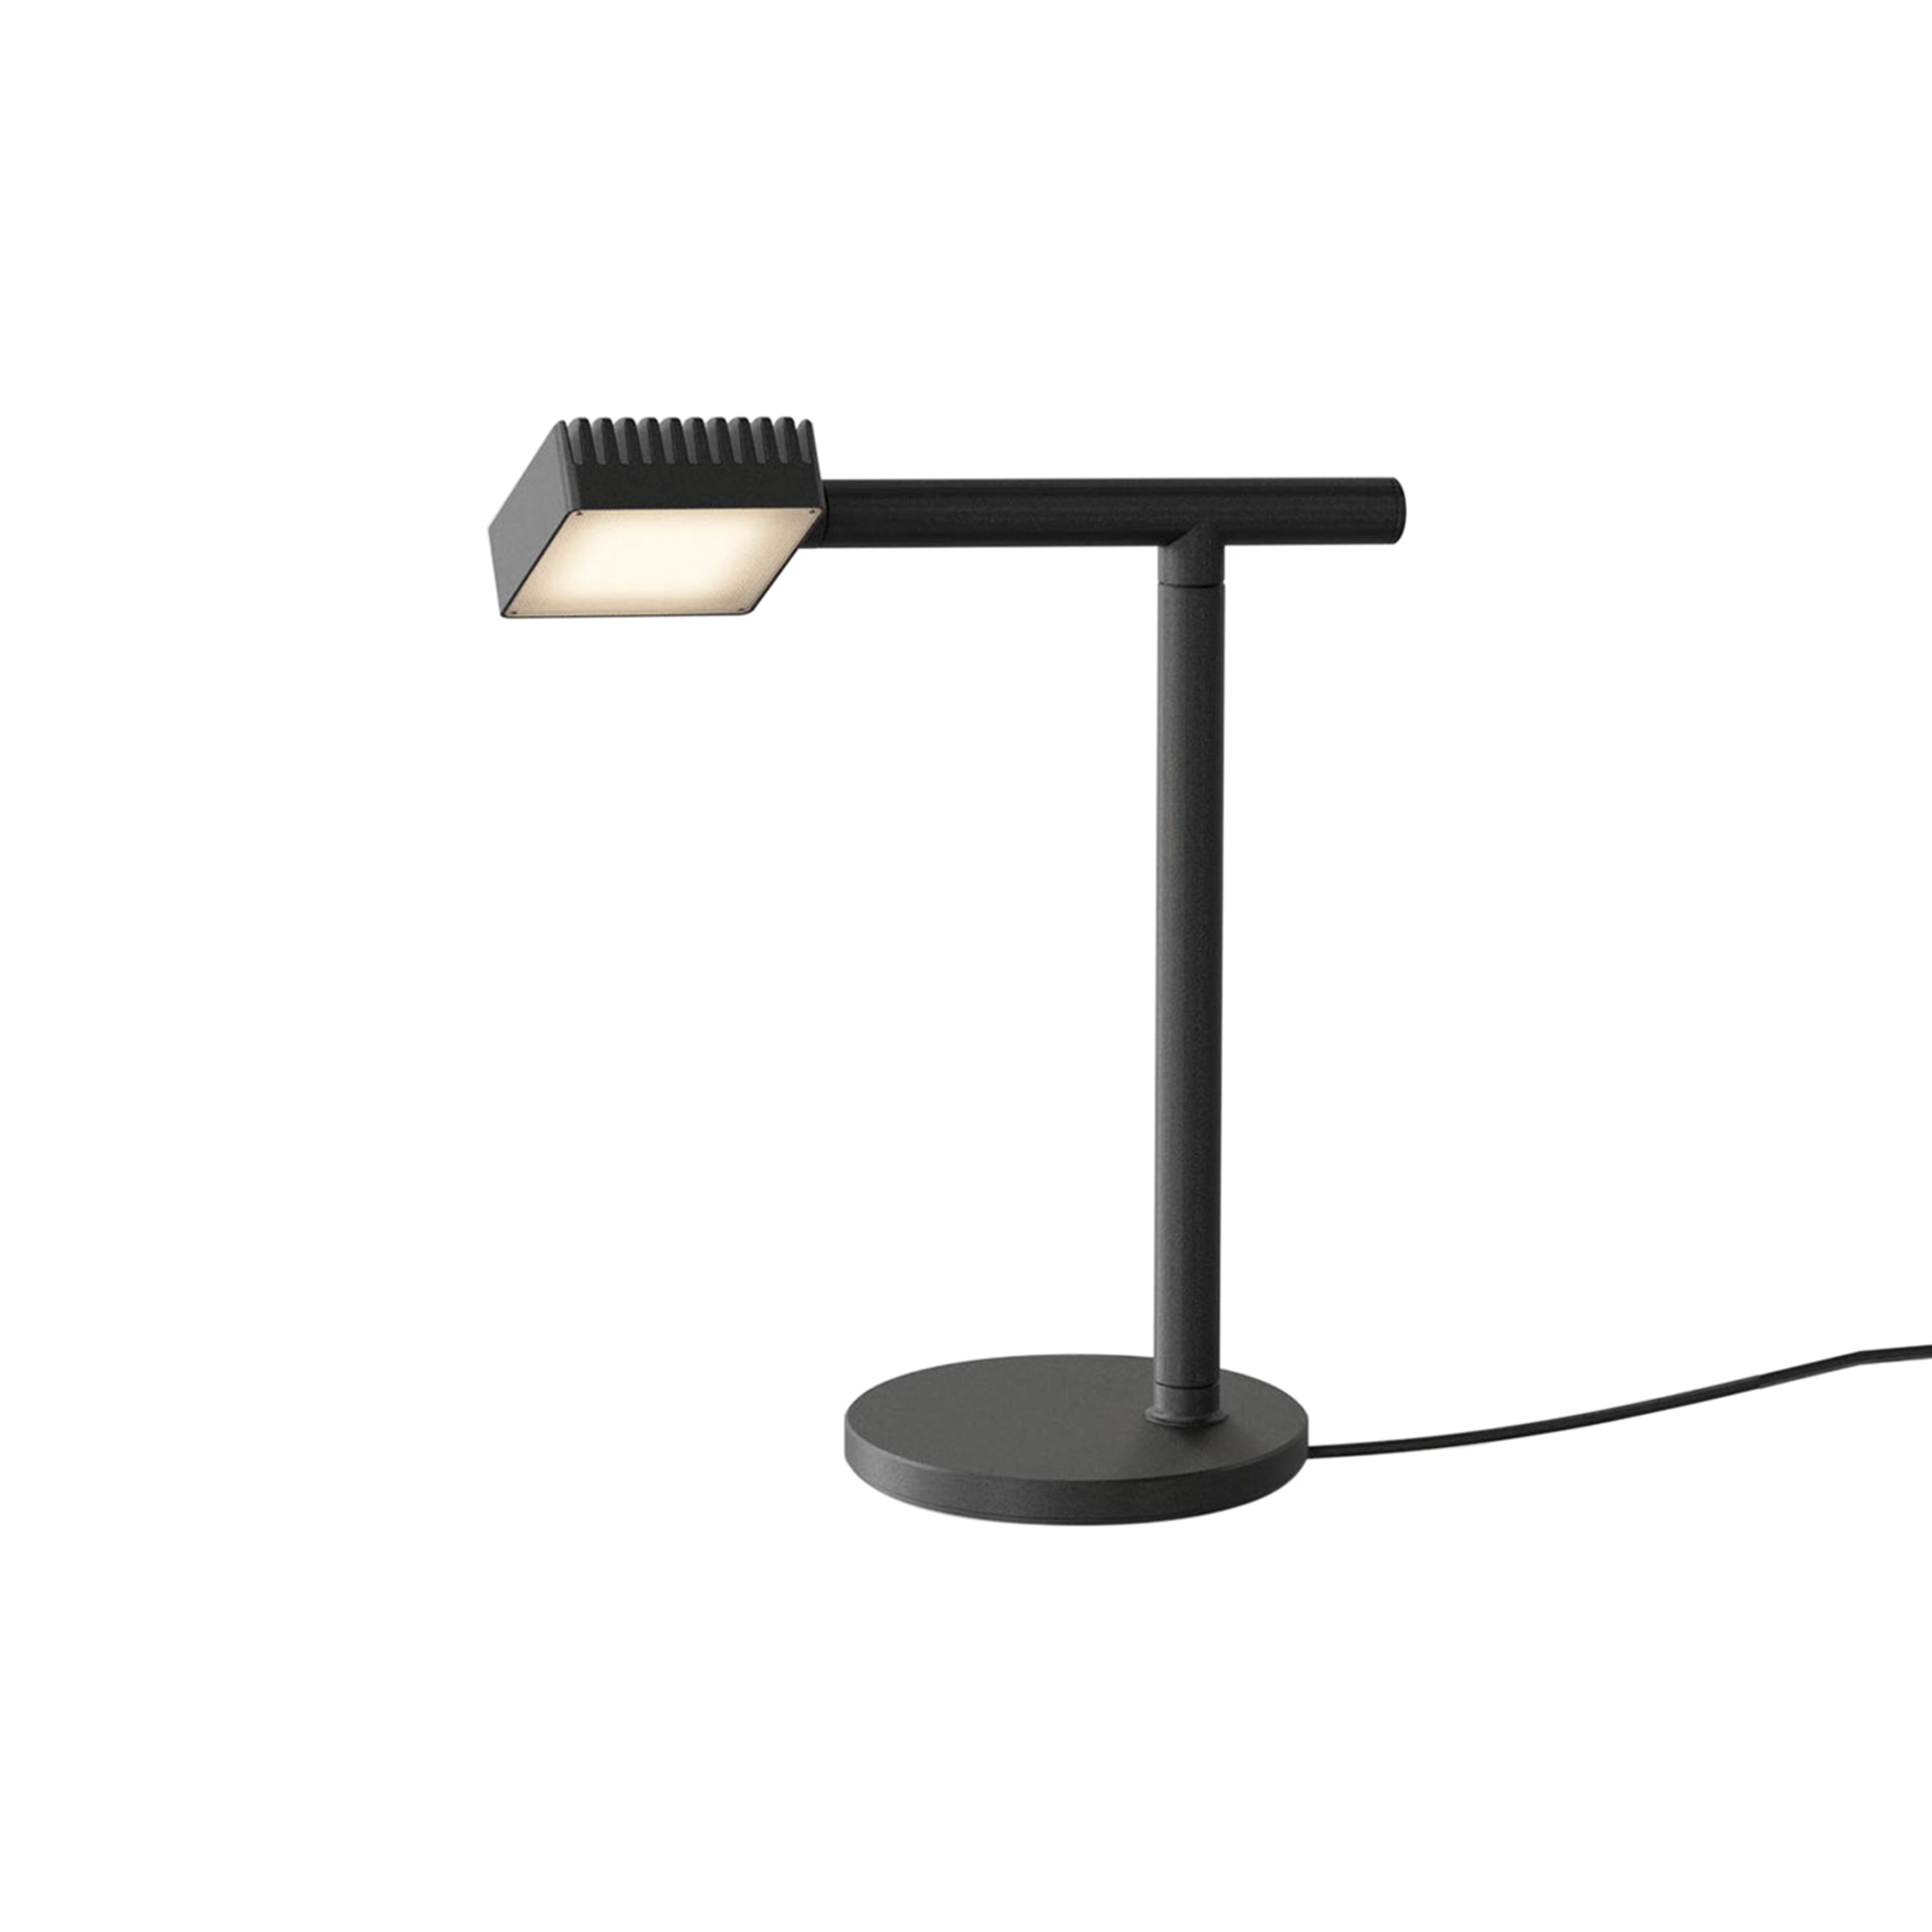 Dorval 02 Table Lamp: Black + Black